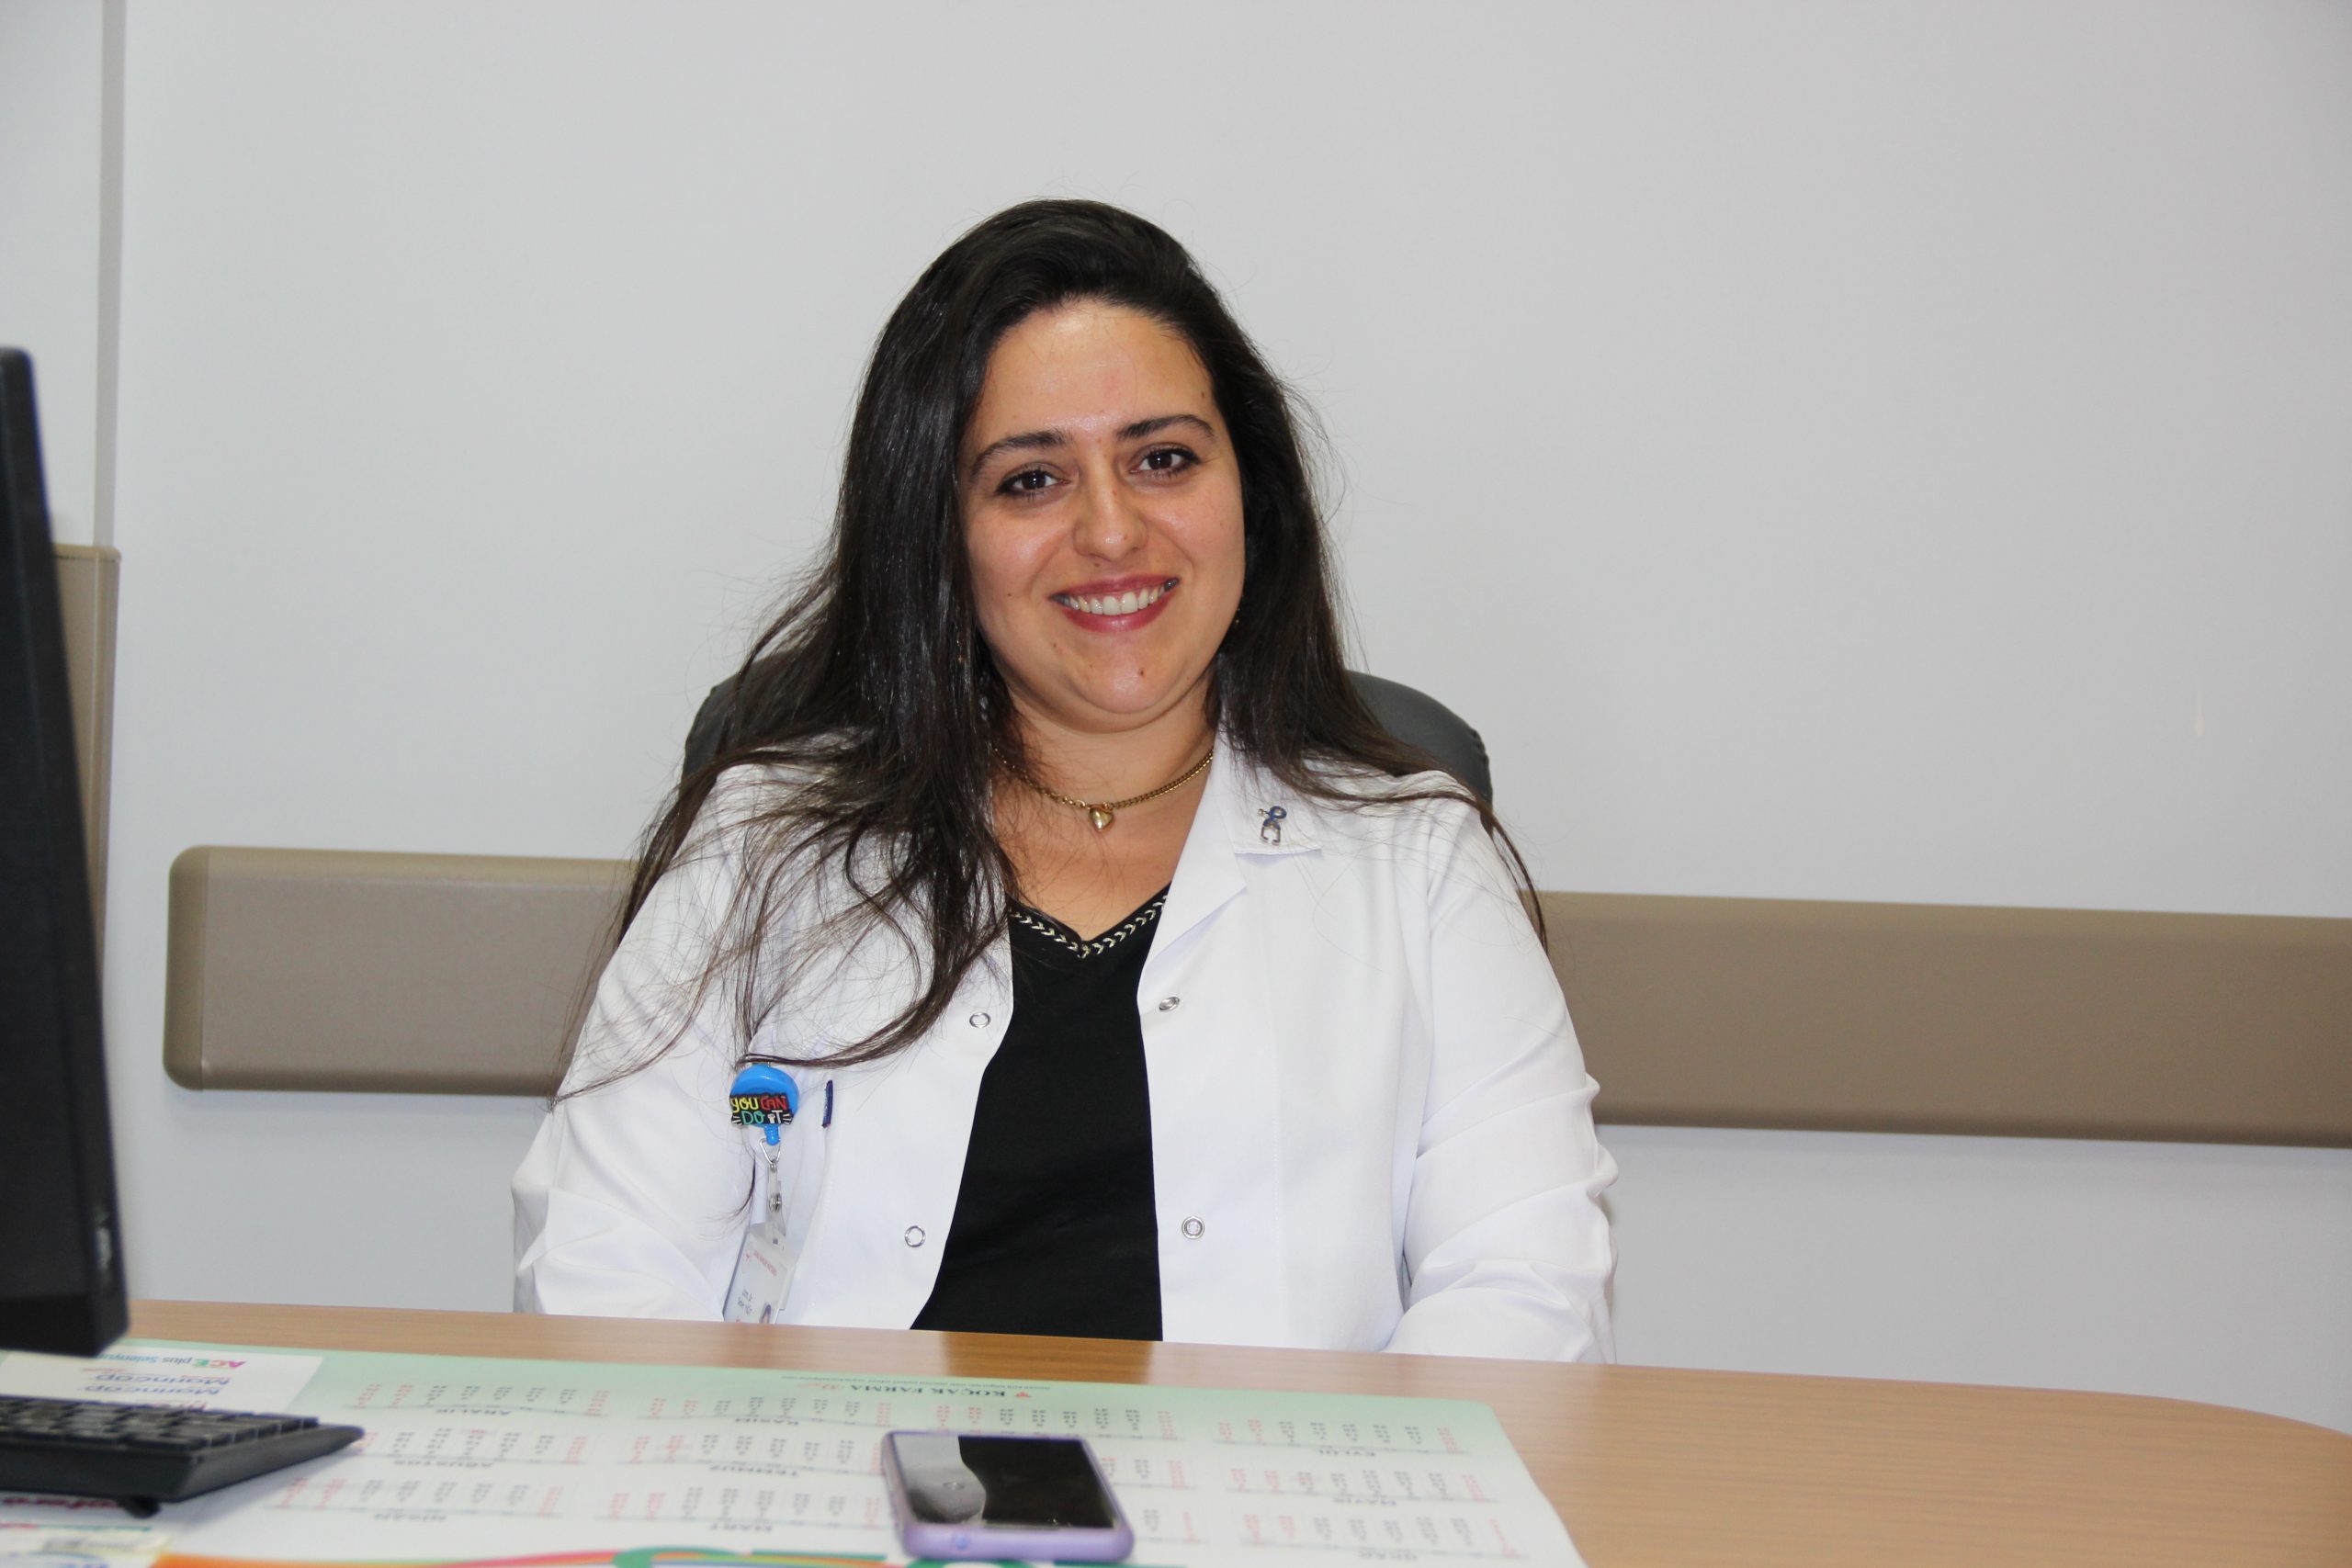 Numune Hastanesinde Geriatri Uzmanı Dr. Seher Yiğit, hasta kabulüne başladı